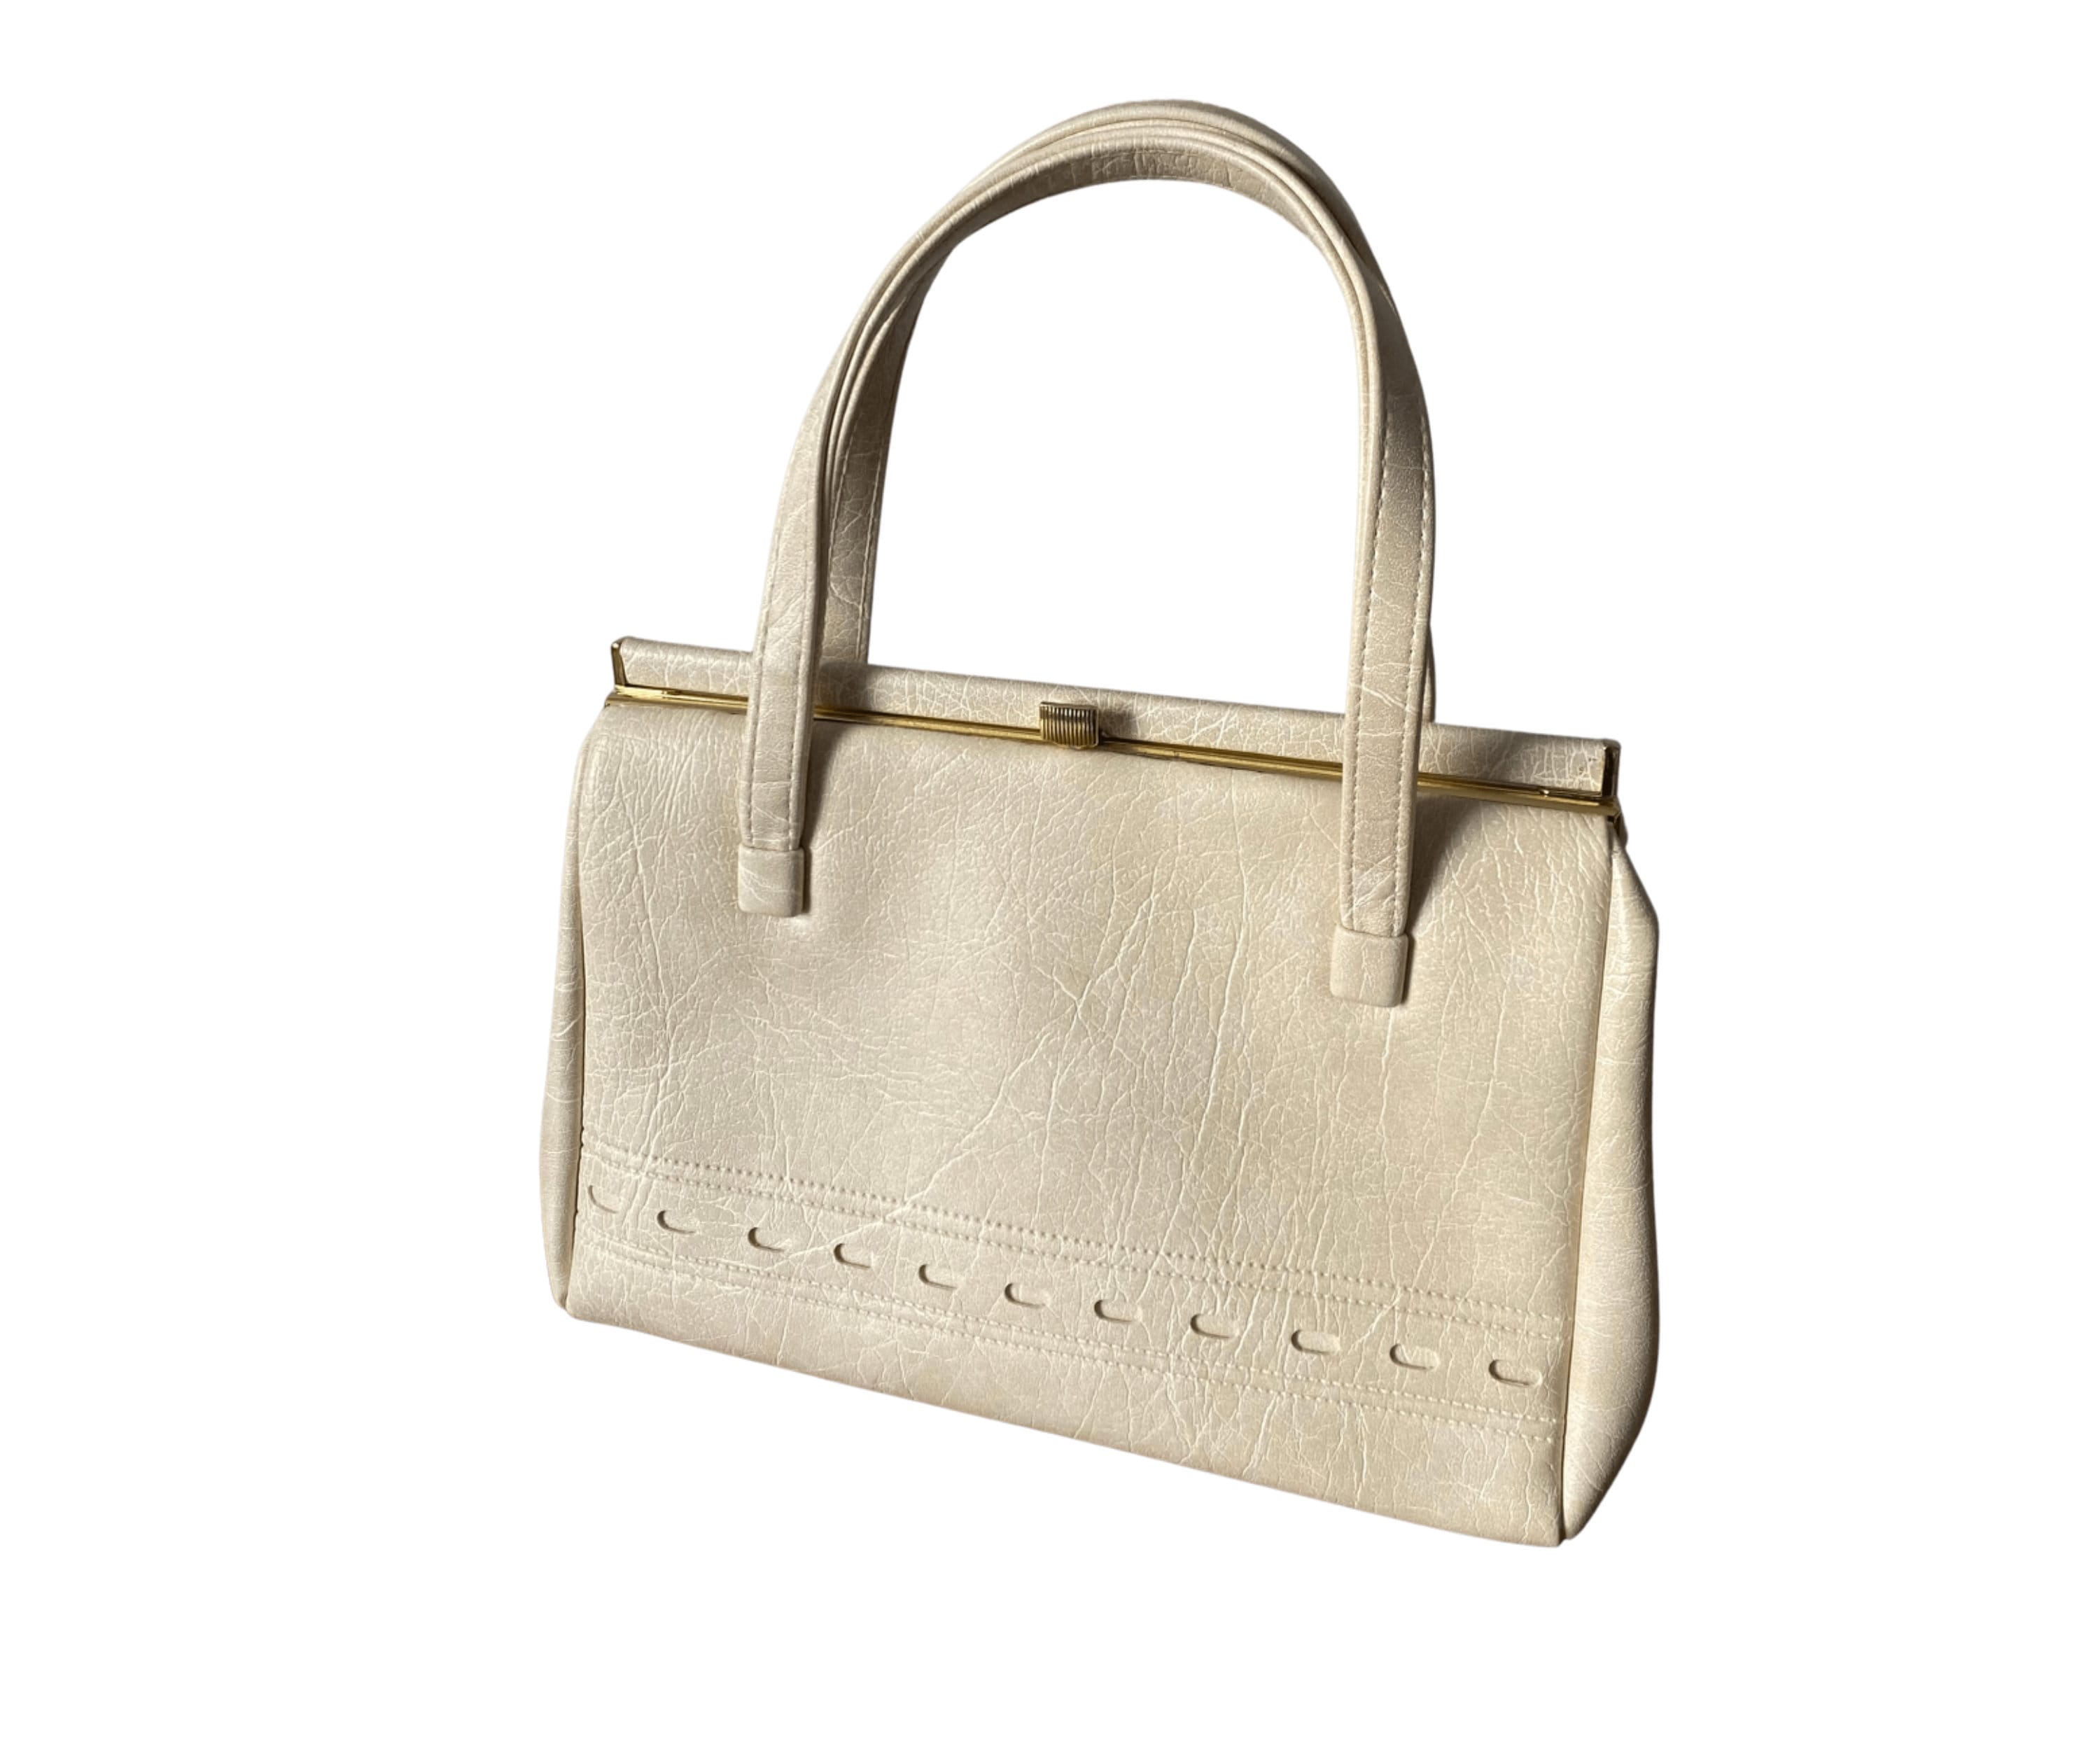 Is it worth it to buy Louis Vuitton's handbags? - Quora